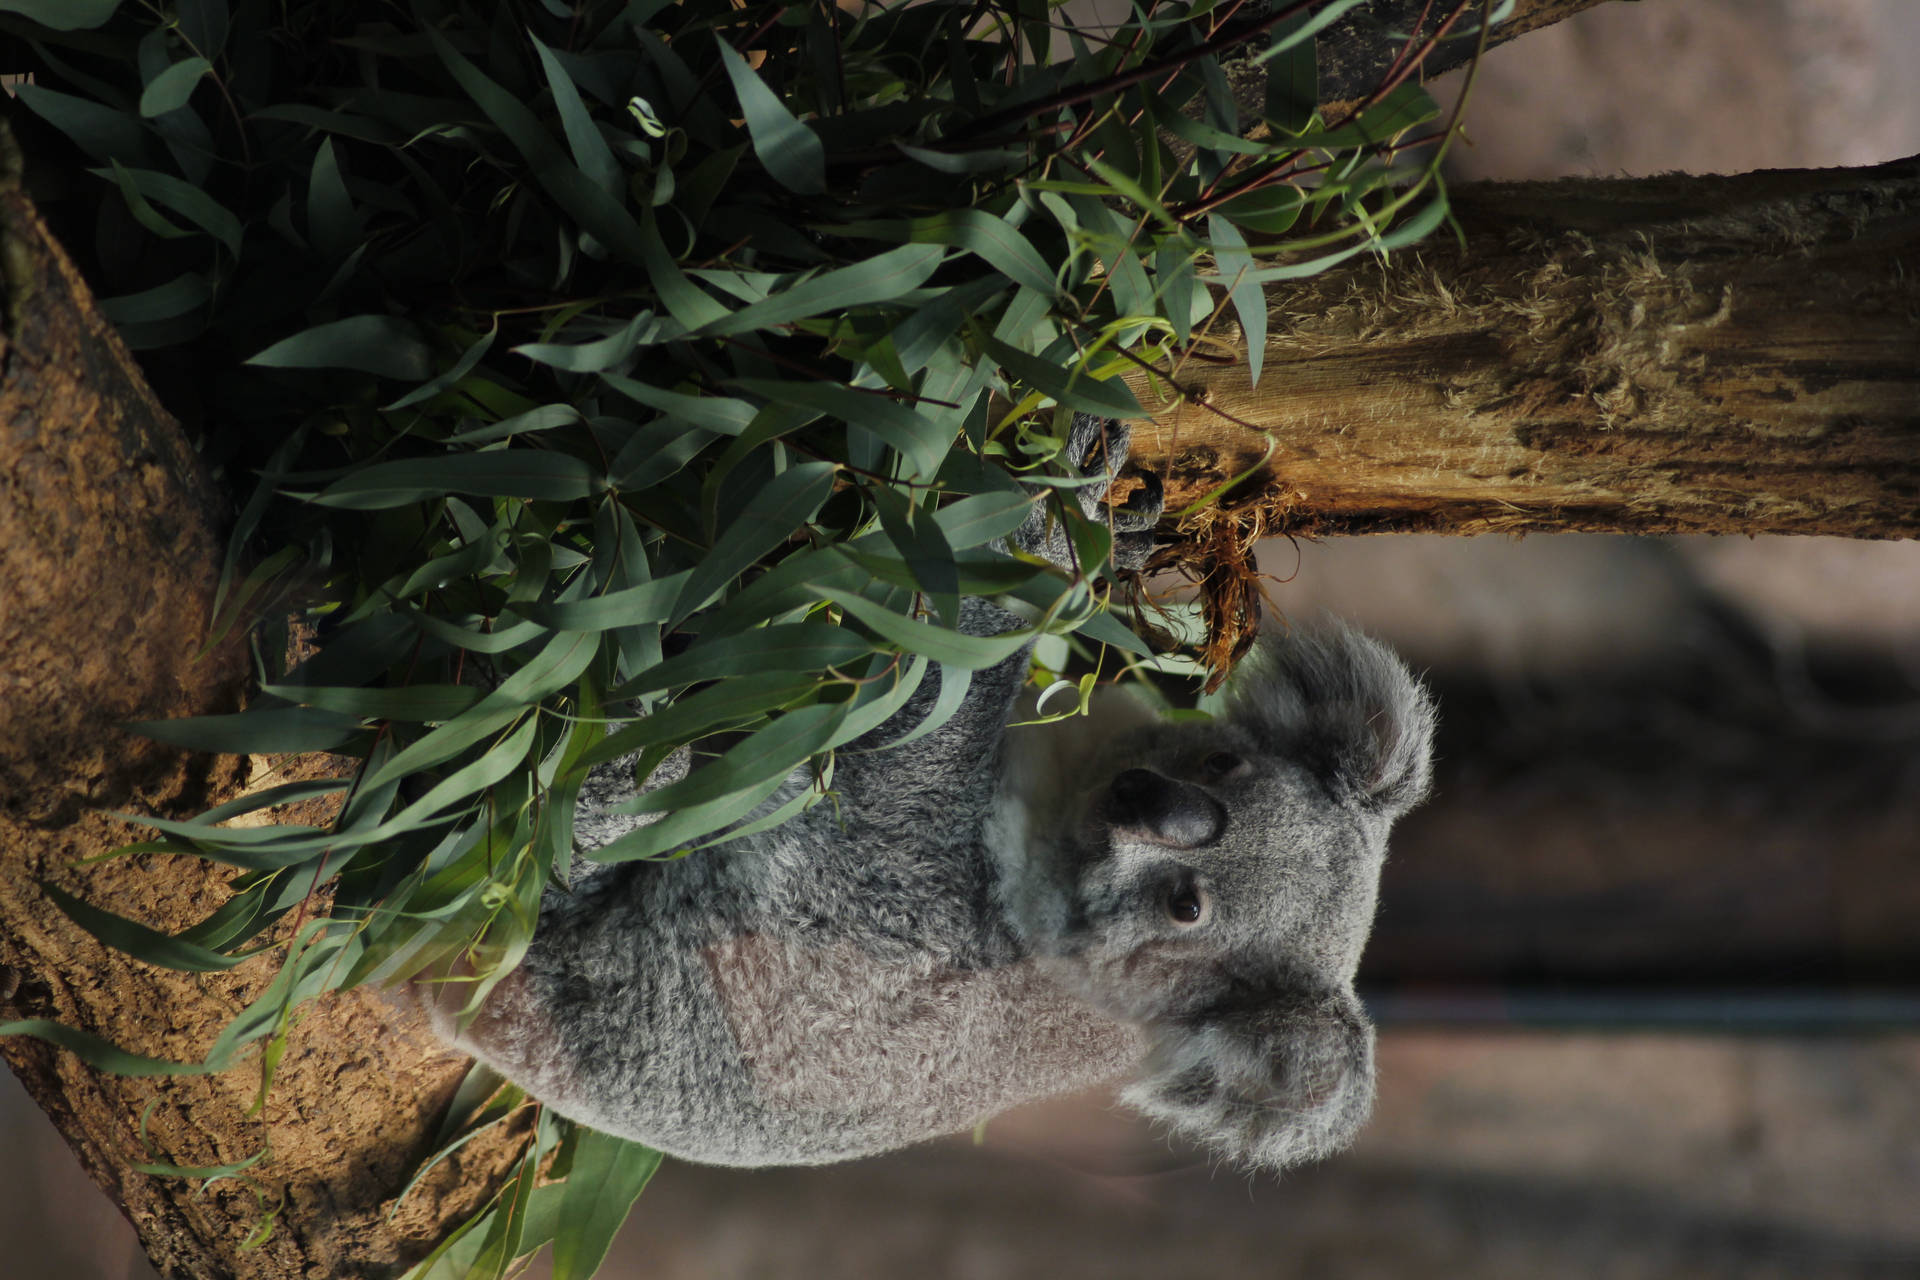 Cute Koala Bear